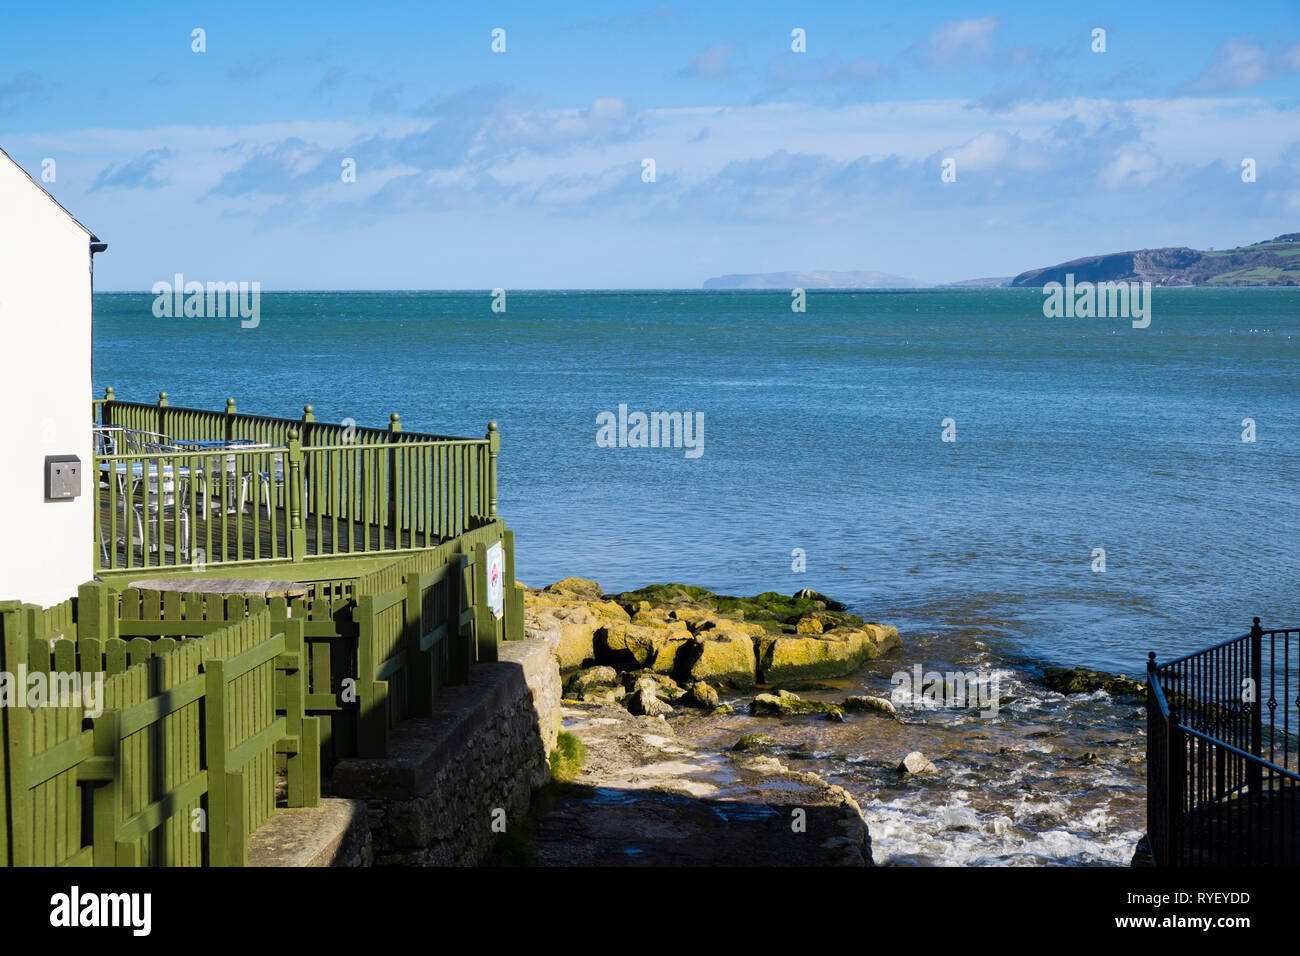 Bay Cafe e streaming sul litorale roccioso affacciato sul mare con Great Orme in distanza. Benllech, Isola di Anglesey, Galles del Nord, Regno Unito, Gran Bretagna Foto Stock